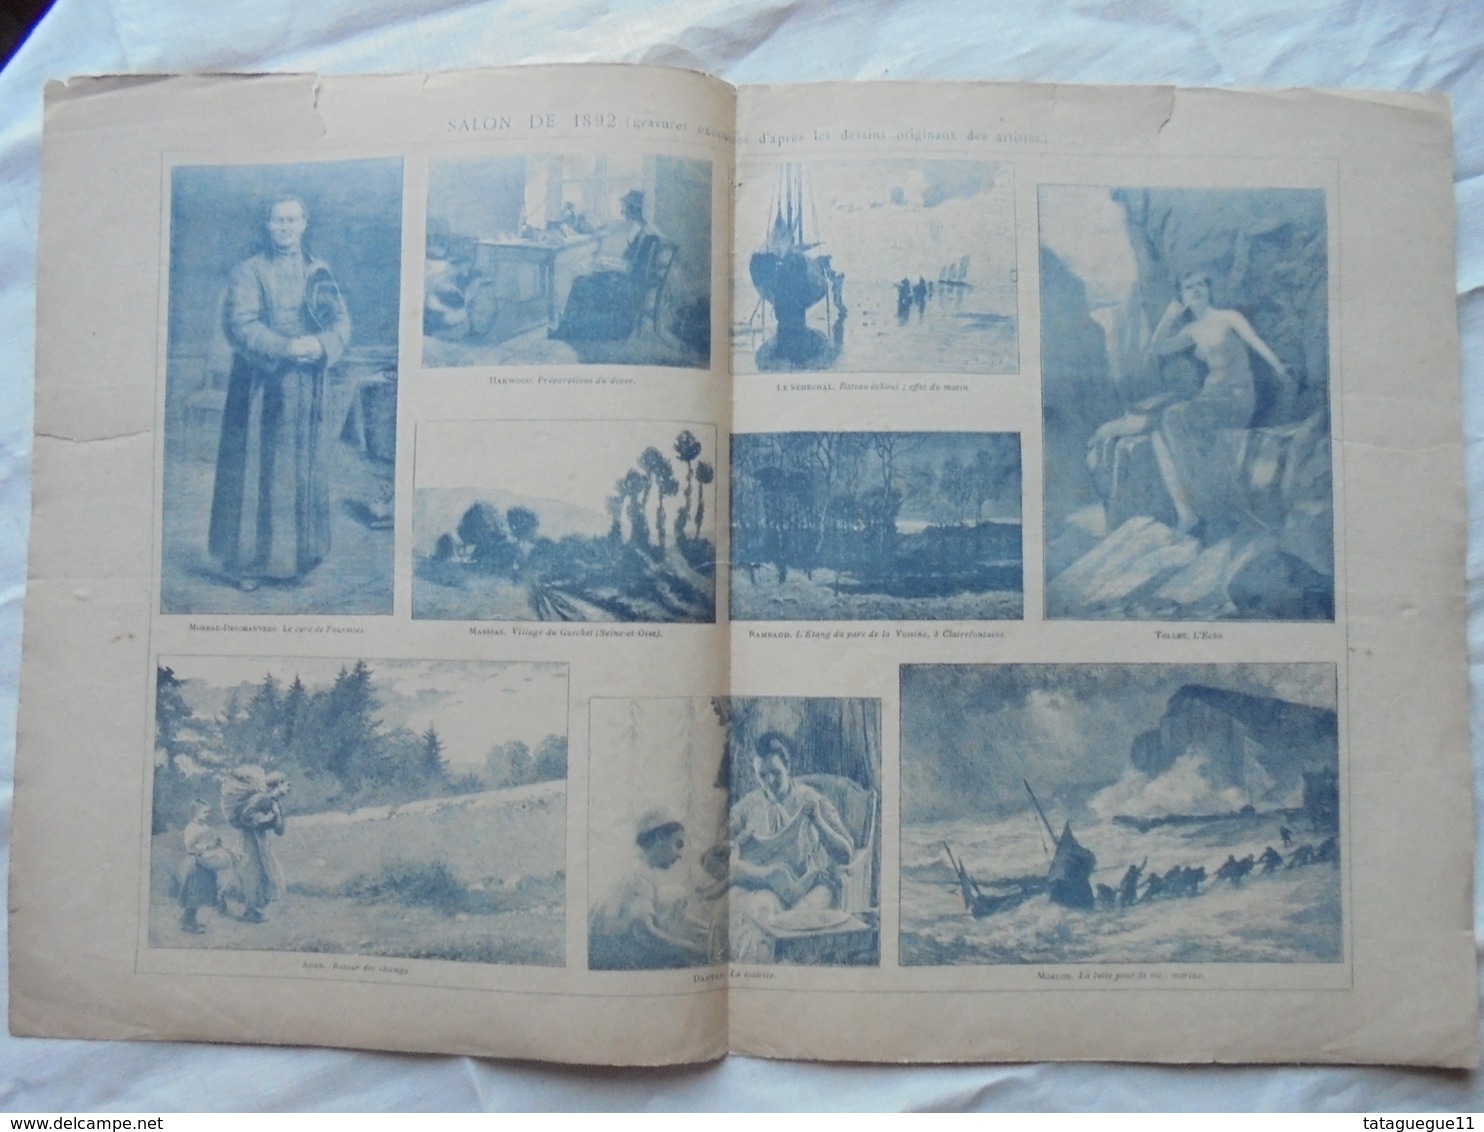 Ancien - Double Page Supplément Anales Politiques Et Littéraires N° 462 5/1892 - Magazines & Catalogues